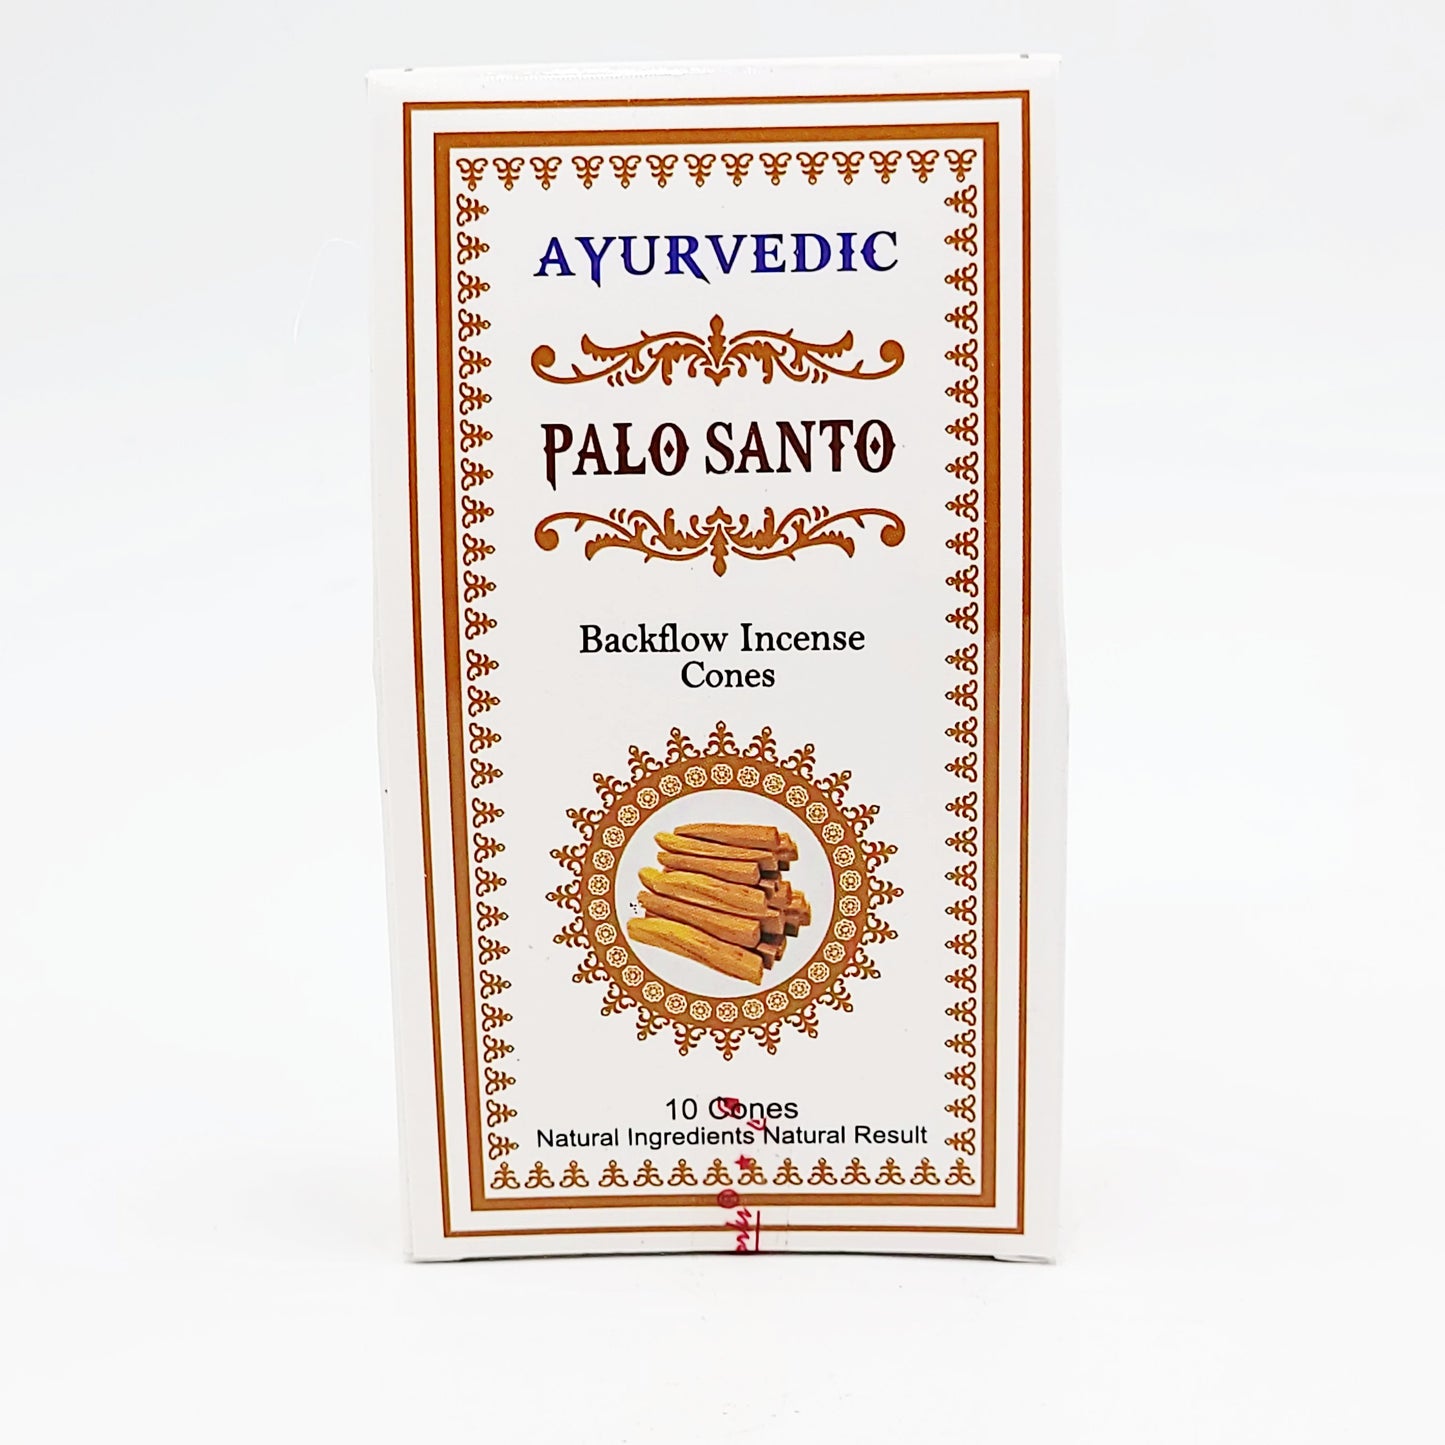 Ayurvedic Palo Santo Backflow Incense Cones 10 Pack